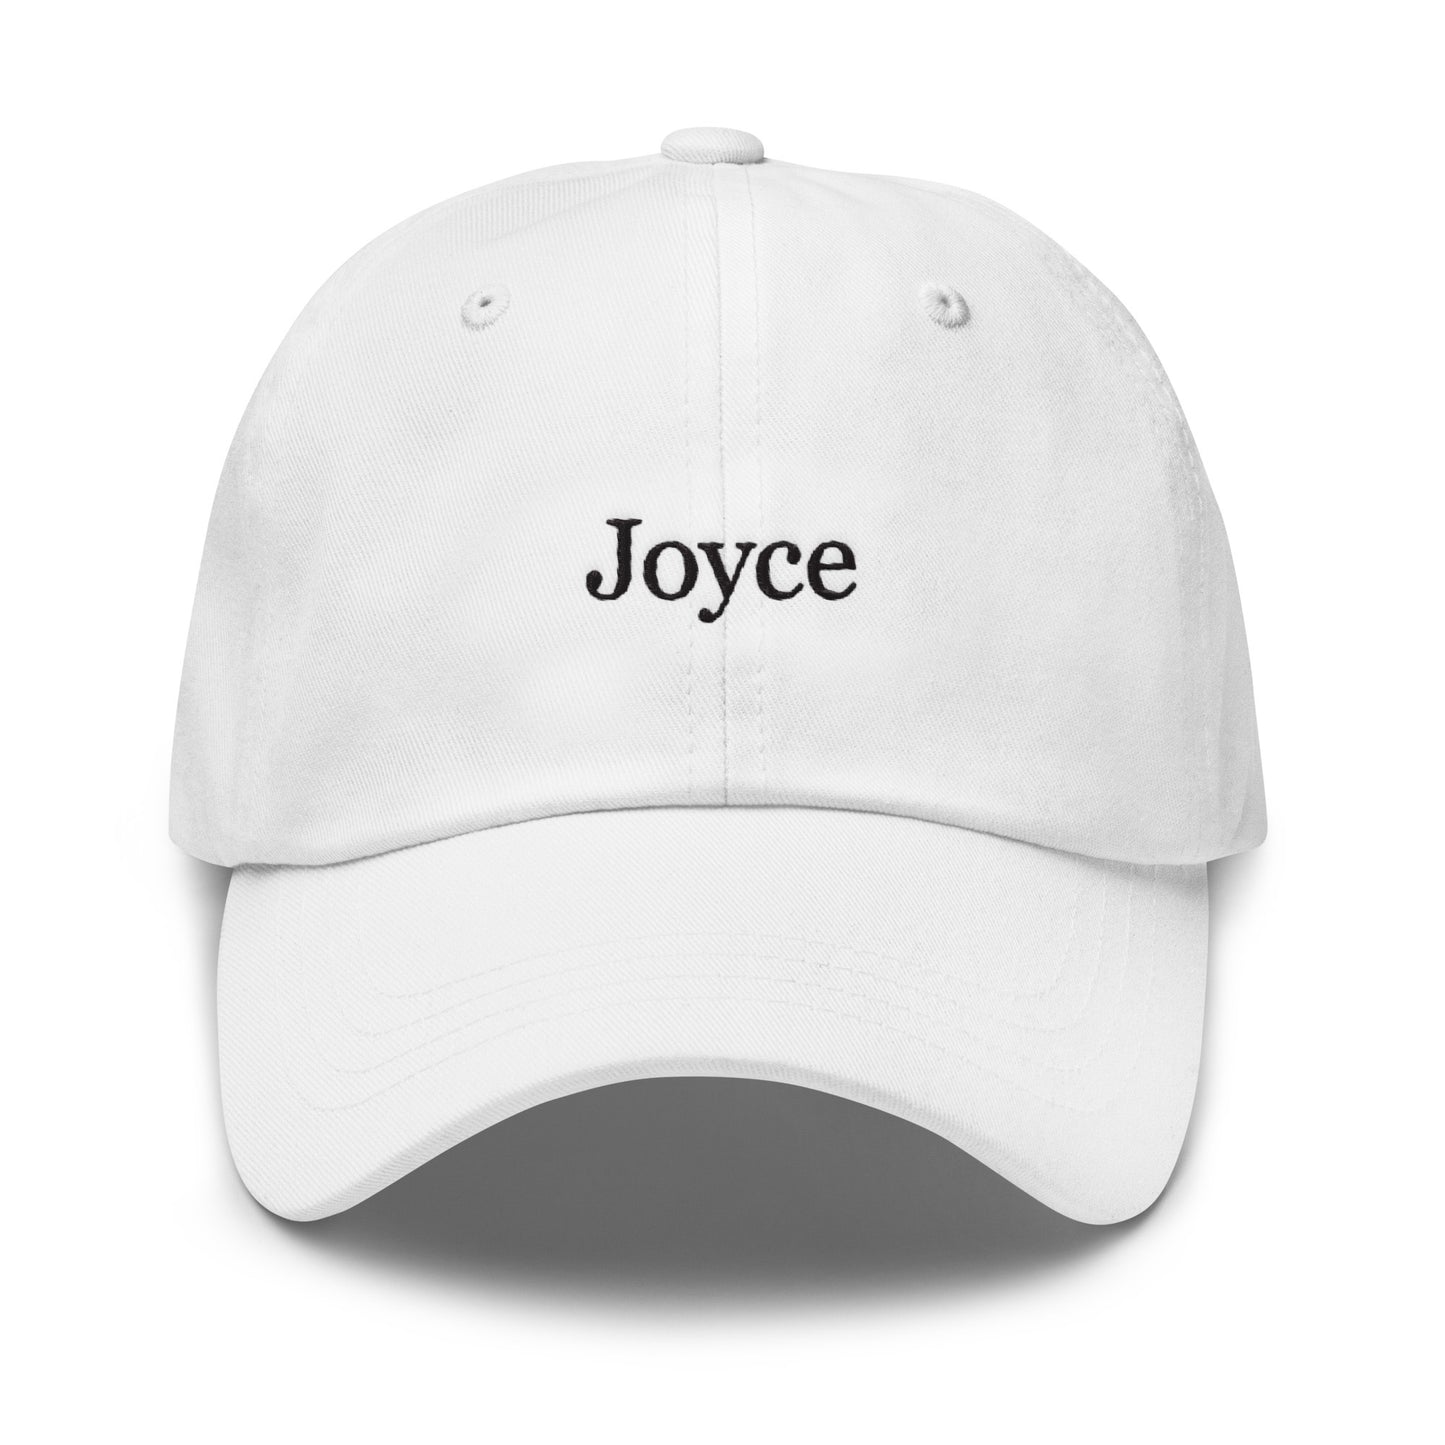 Joyce Hat